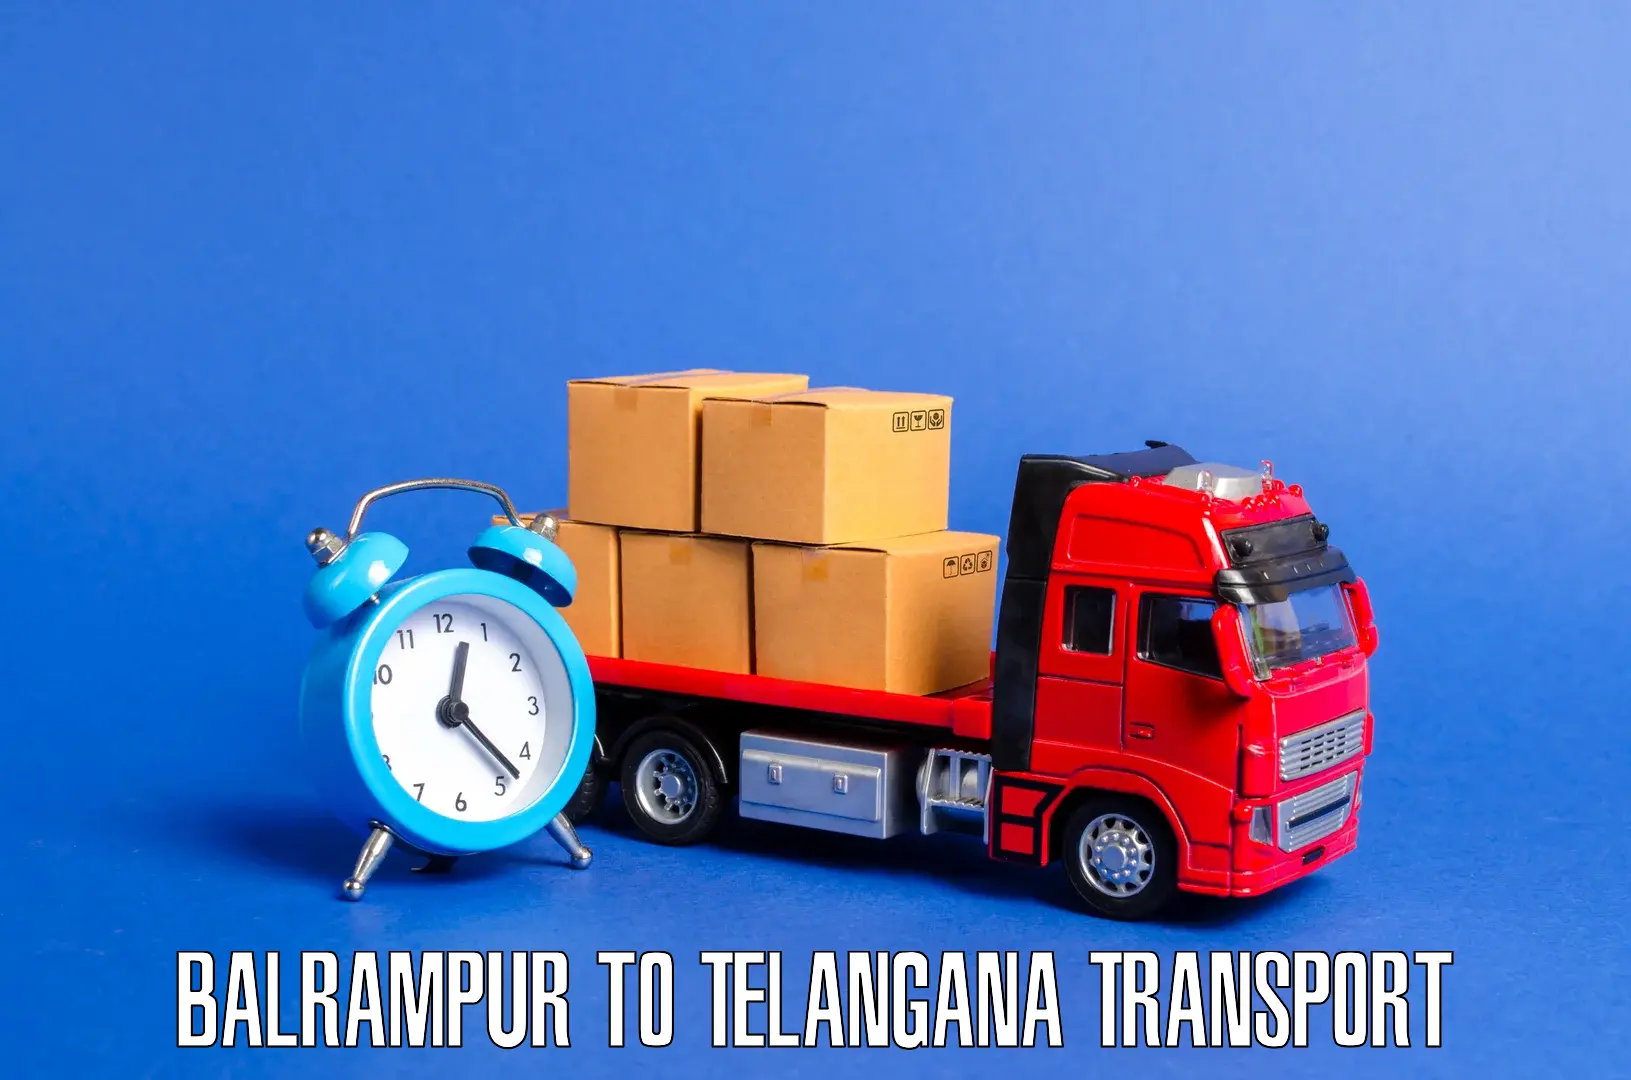 Cycle transportation service Balrampur to Tiryani